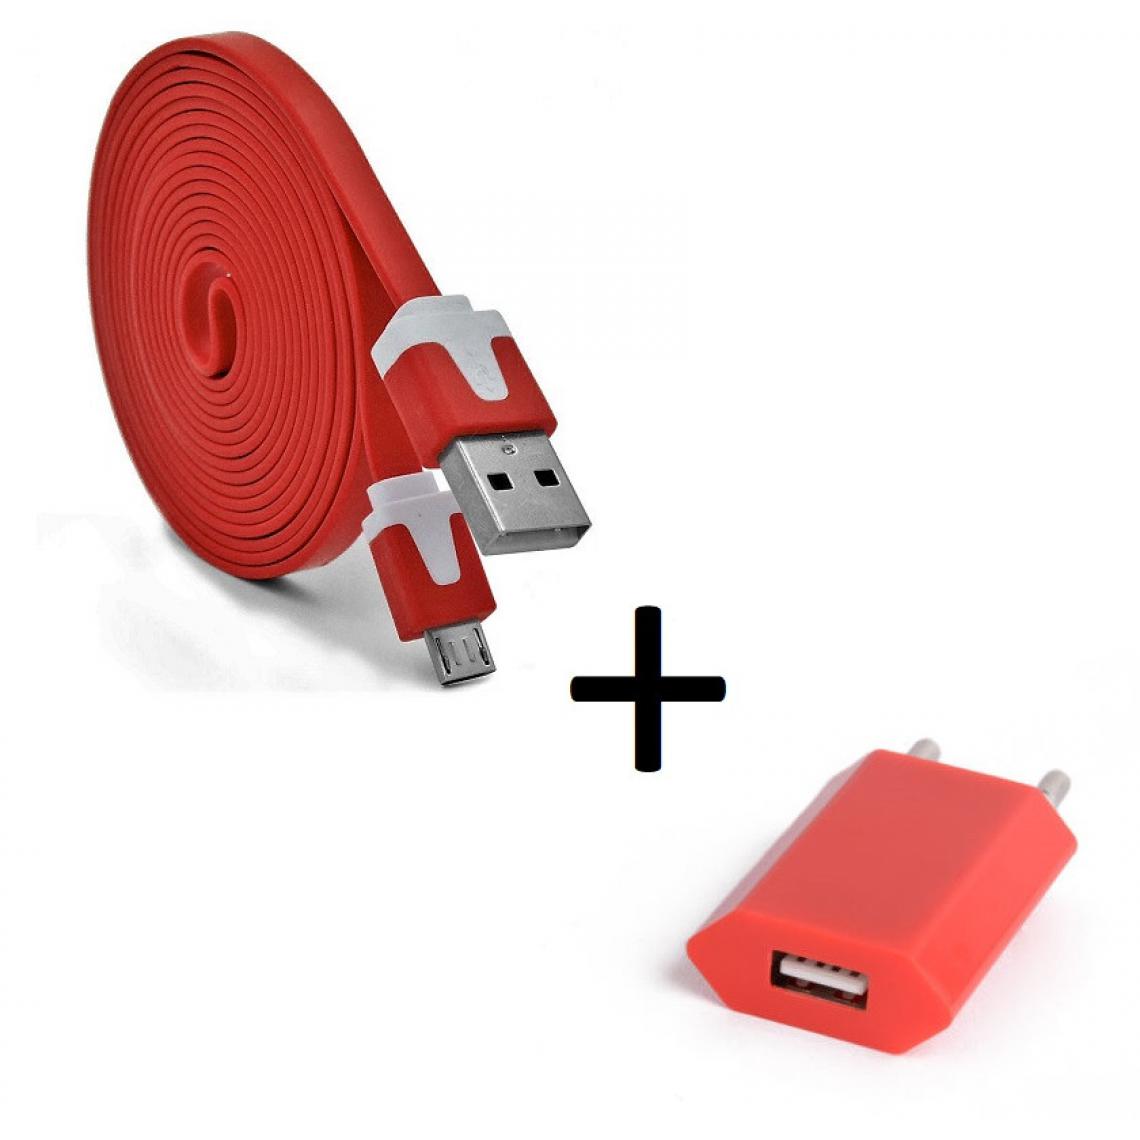 Shot - Pack Chargeur pour HUAWEI P smart 2019 Micro USB (Cable Noodle 3m + Prise Secteur Couleur USB) Android (ROUGE) - Chargeur secteur téléphone